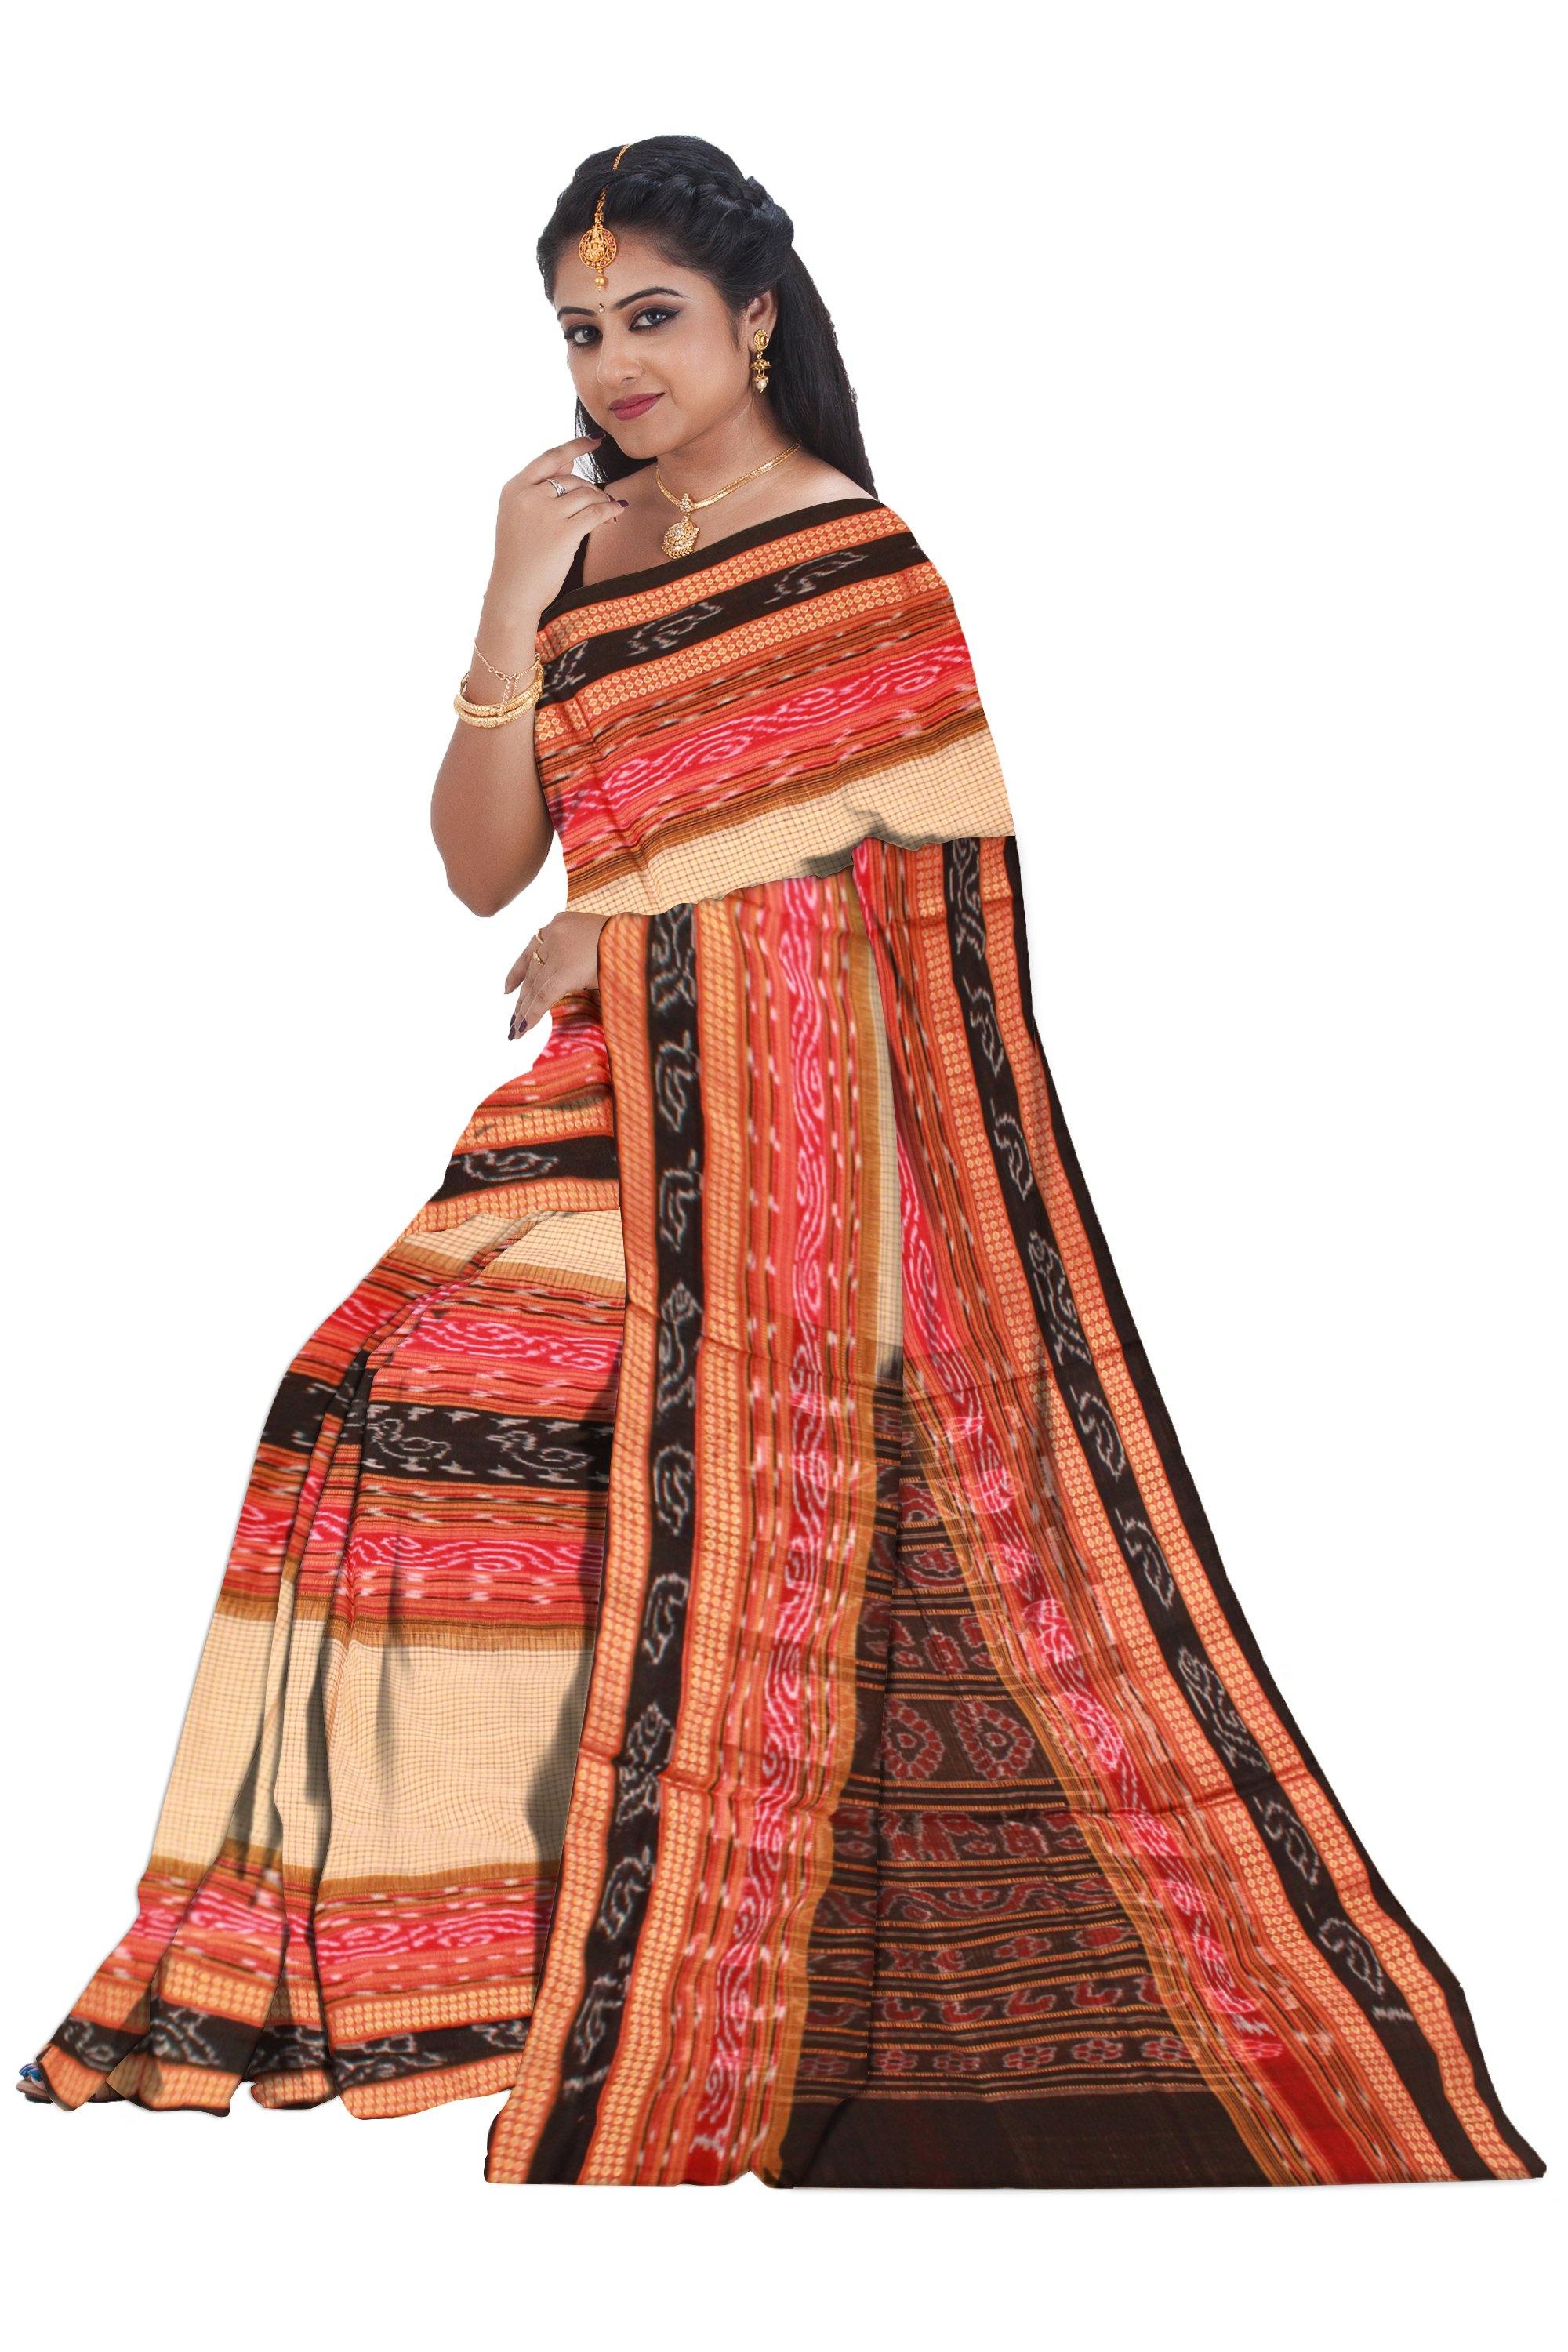 Traditional Sachipar cotton saree with out blouse piece. - Koshali Arts & Crafts Enterprise